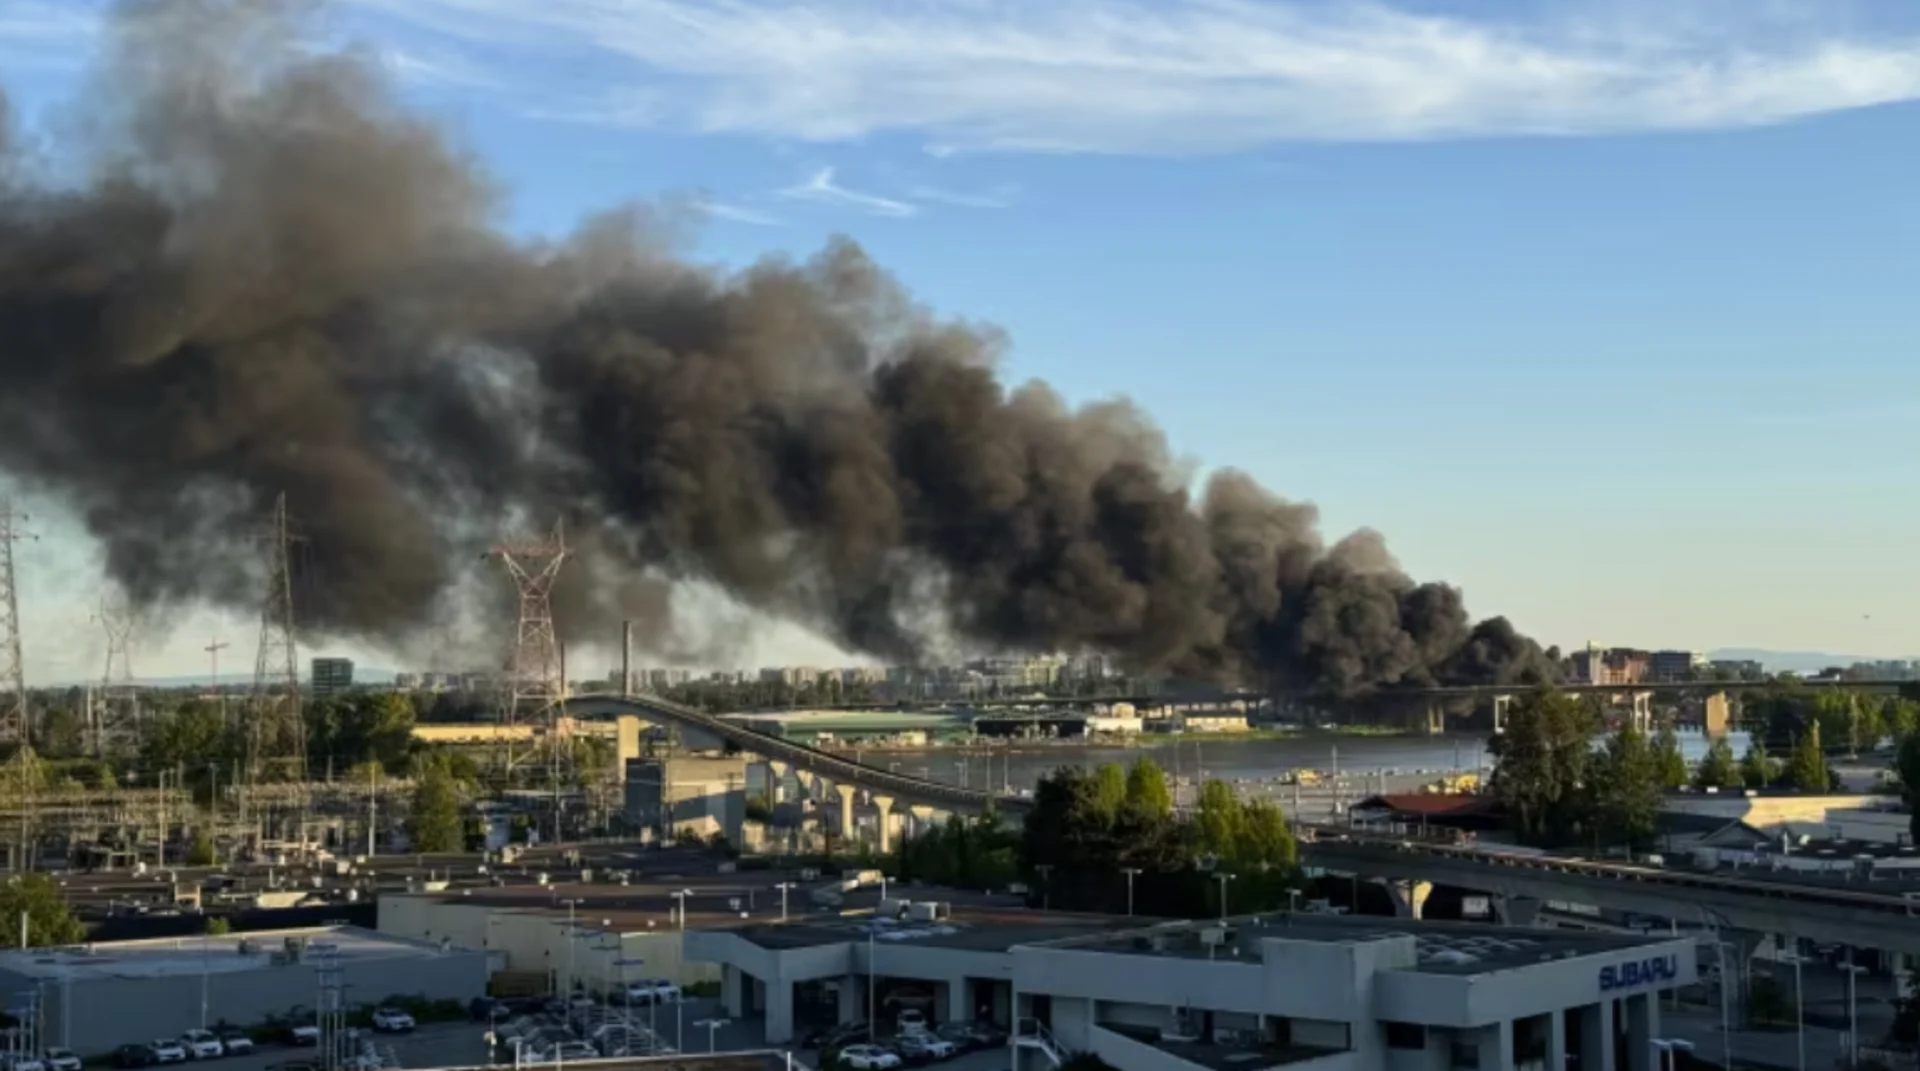 Large fire breaks out near Oak Street Bridge in Richmond, B.C.